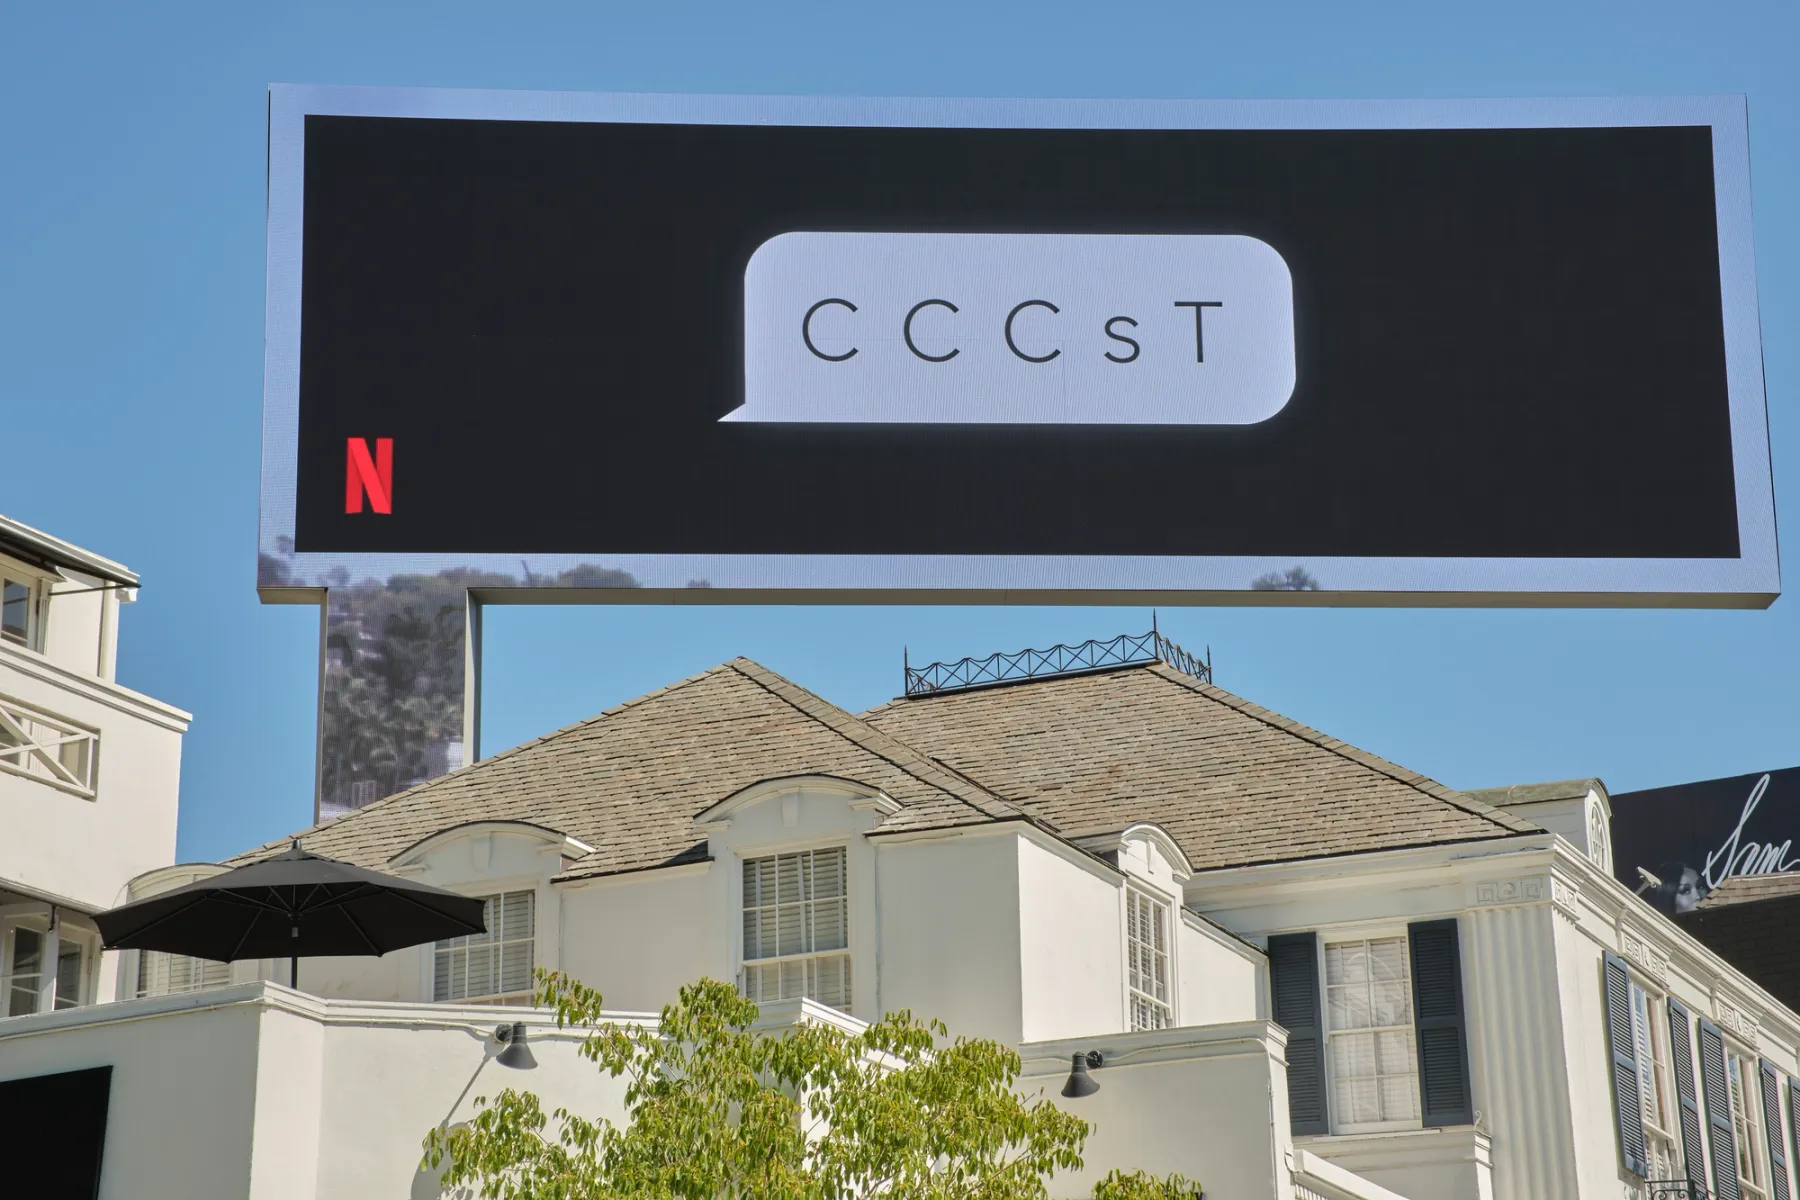 廣告看板的照片。 i9t 的左下角有 Netflix 標誌，還有一個對話氣泡，上面寫著“C C C s T”